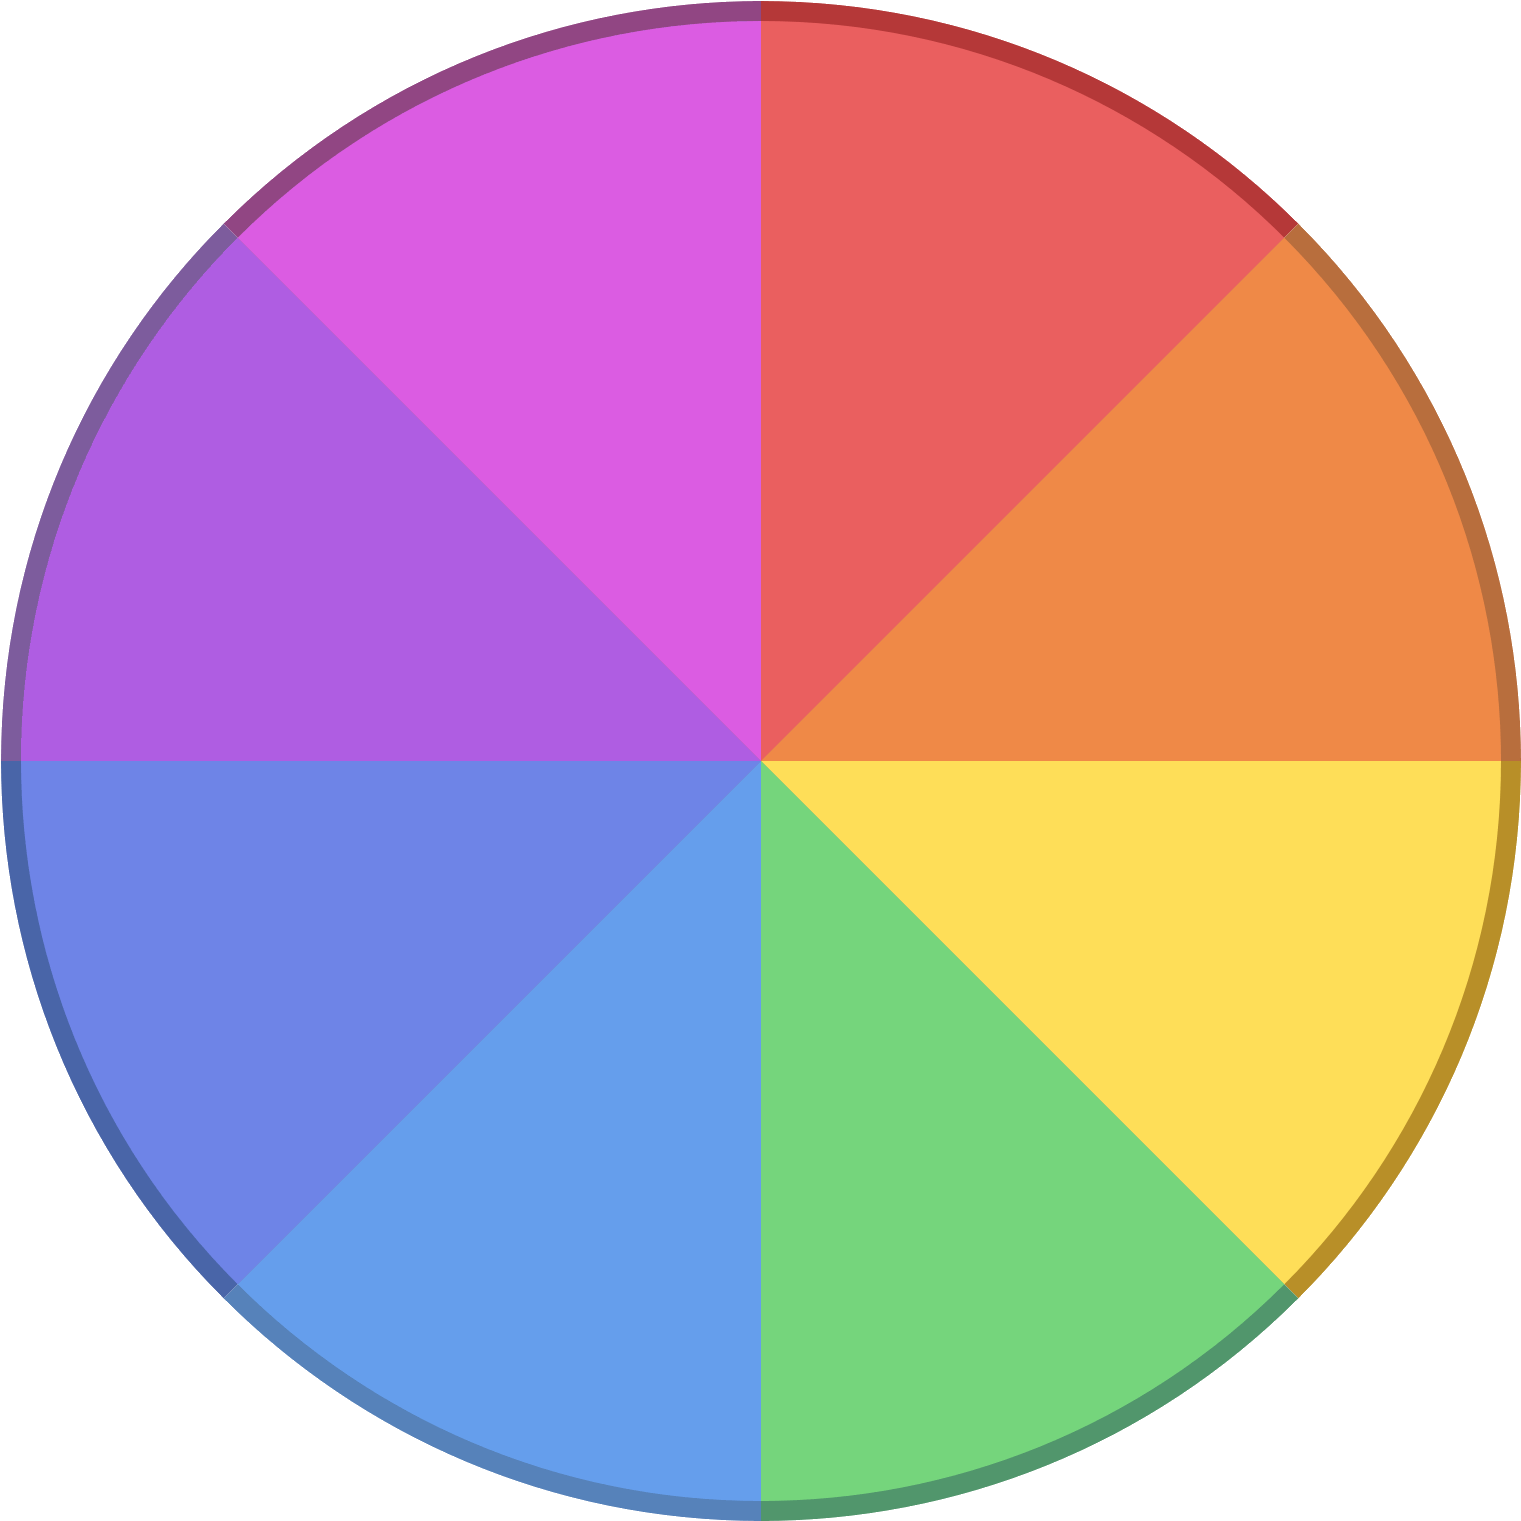 Скачай другой круг. Цветовой круг. Цветовая палитра круглая. Сектор круга. Разноцветный круг с секторами.